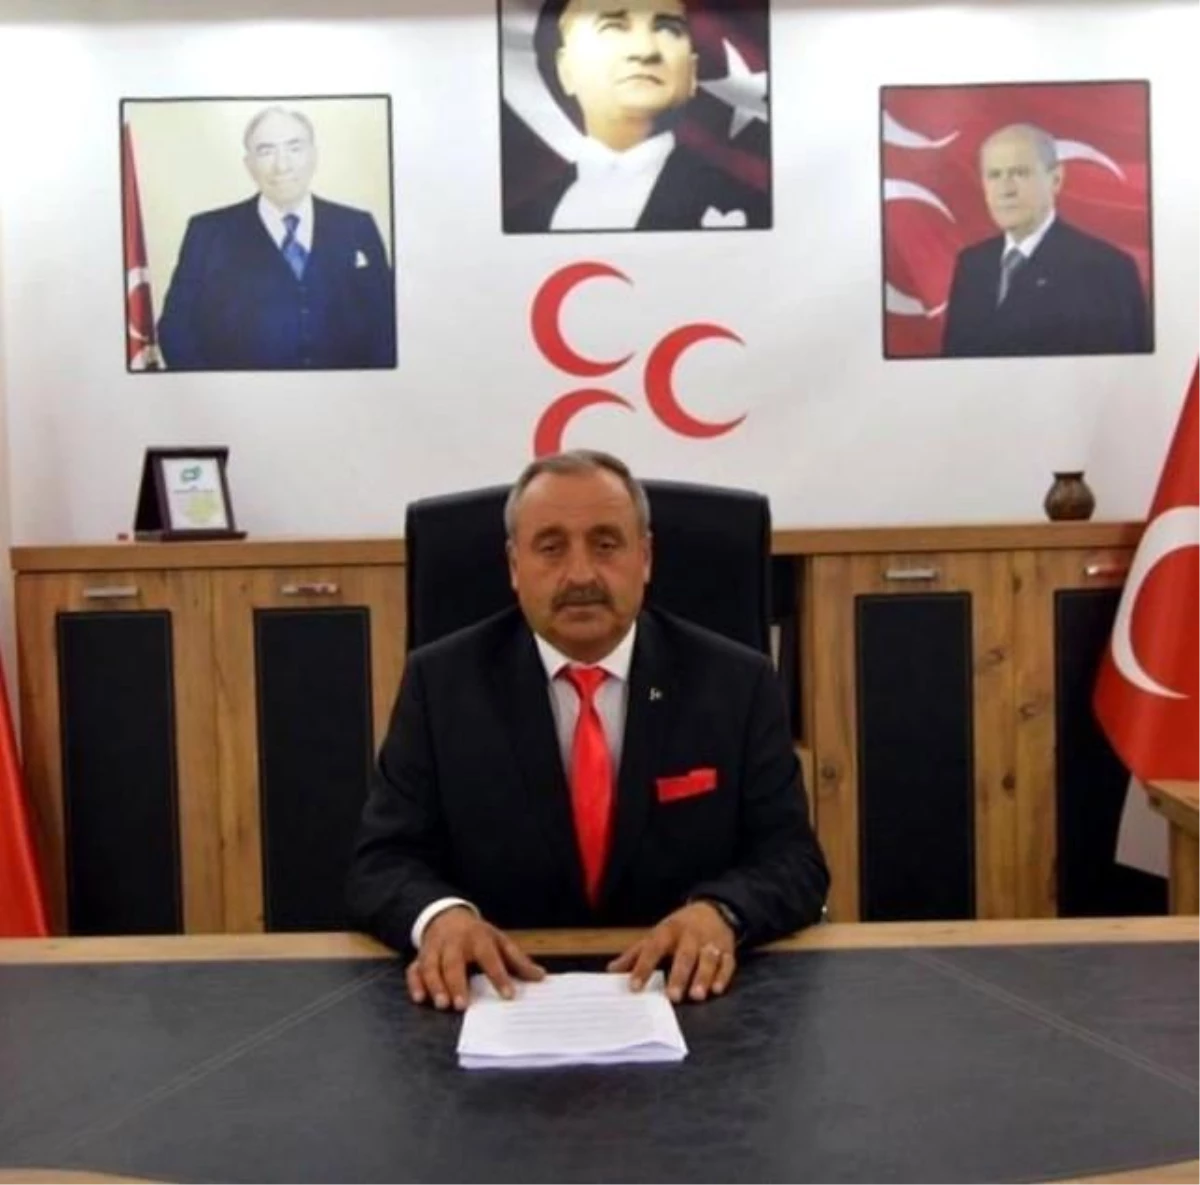 MHP Yenişehir İlçe Başkanı Arif Eren: "İYİ Parti İlçe Başkanı çamur siyasetini kendisine düstur edinmiş"